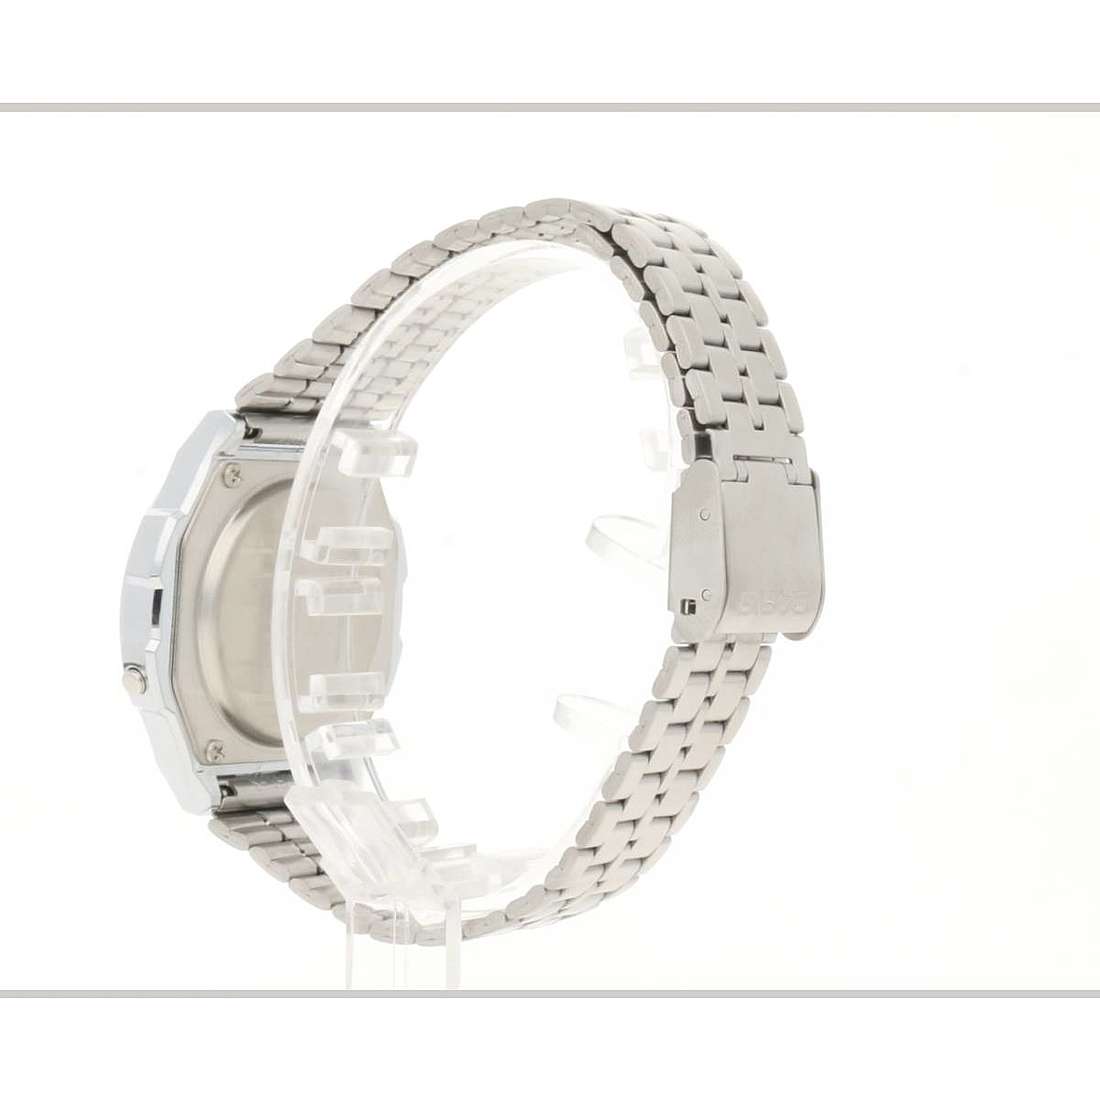 Offres montres unisex Casio A171WE-1AEF